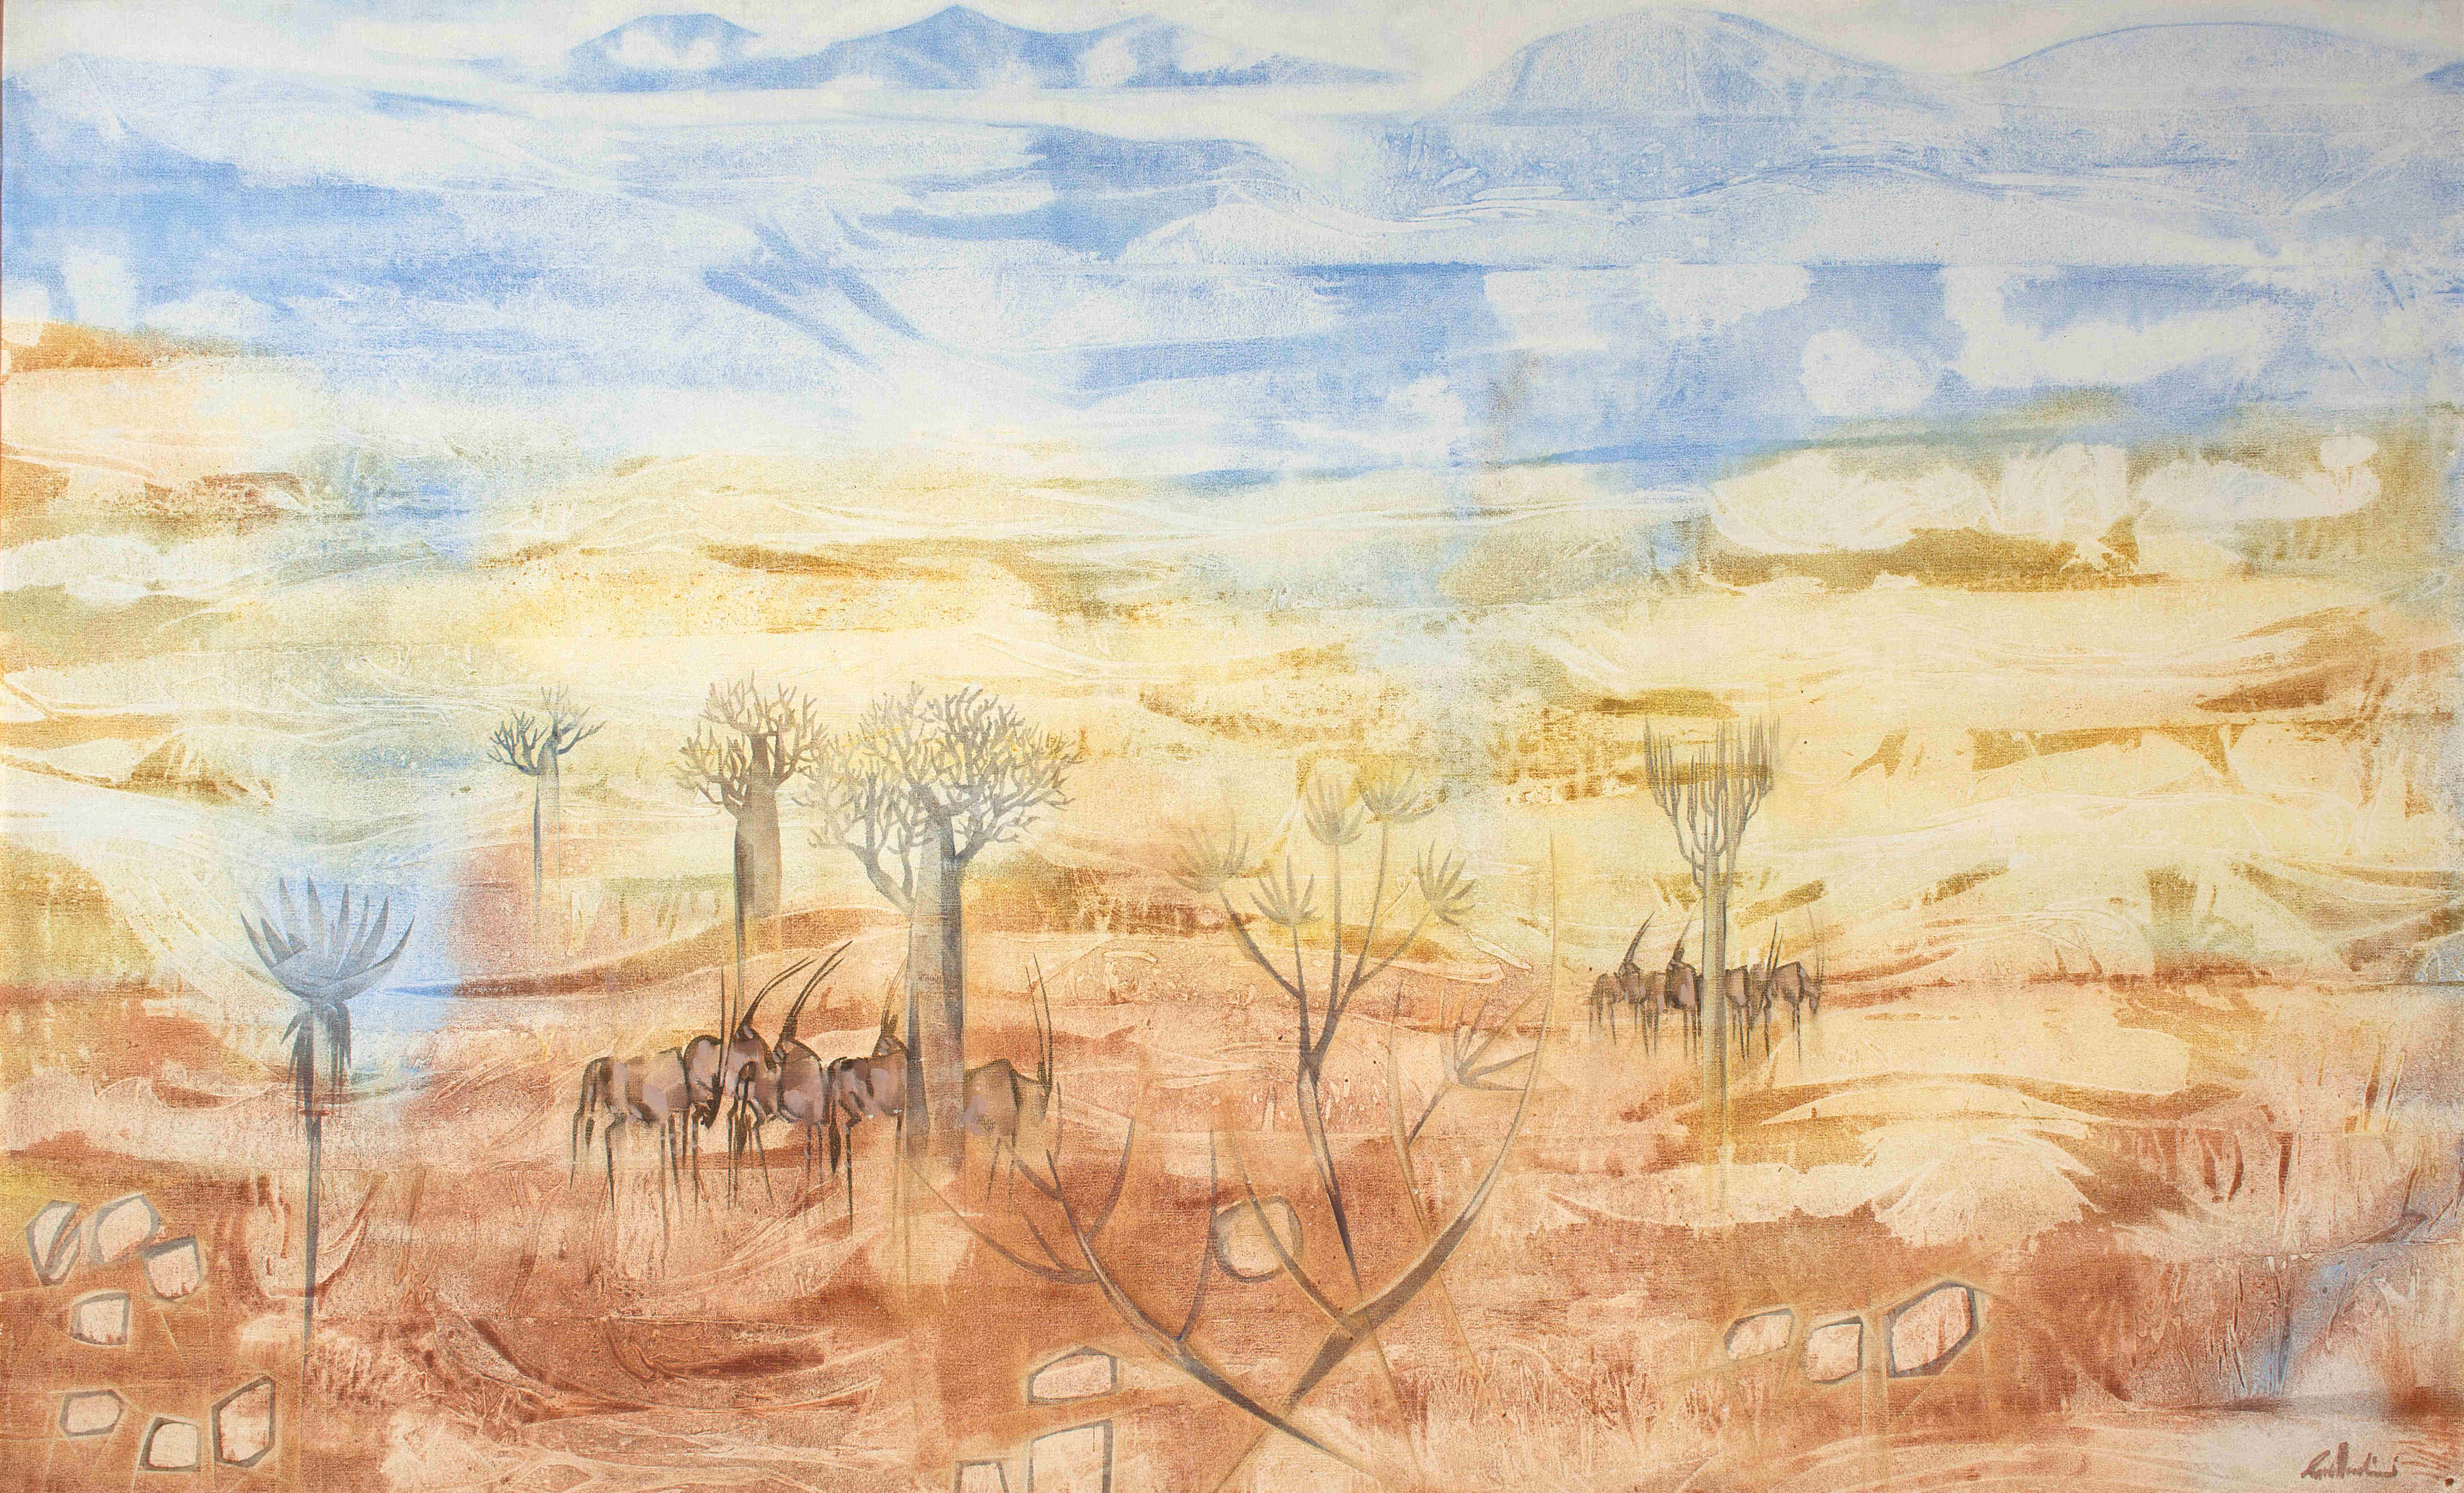 Gordon Vorster; Gemsbokke in an Extensive Arid Landscape